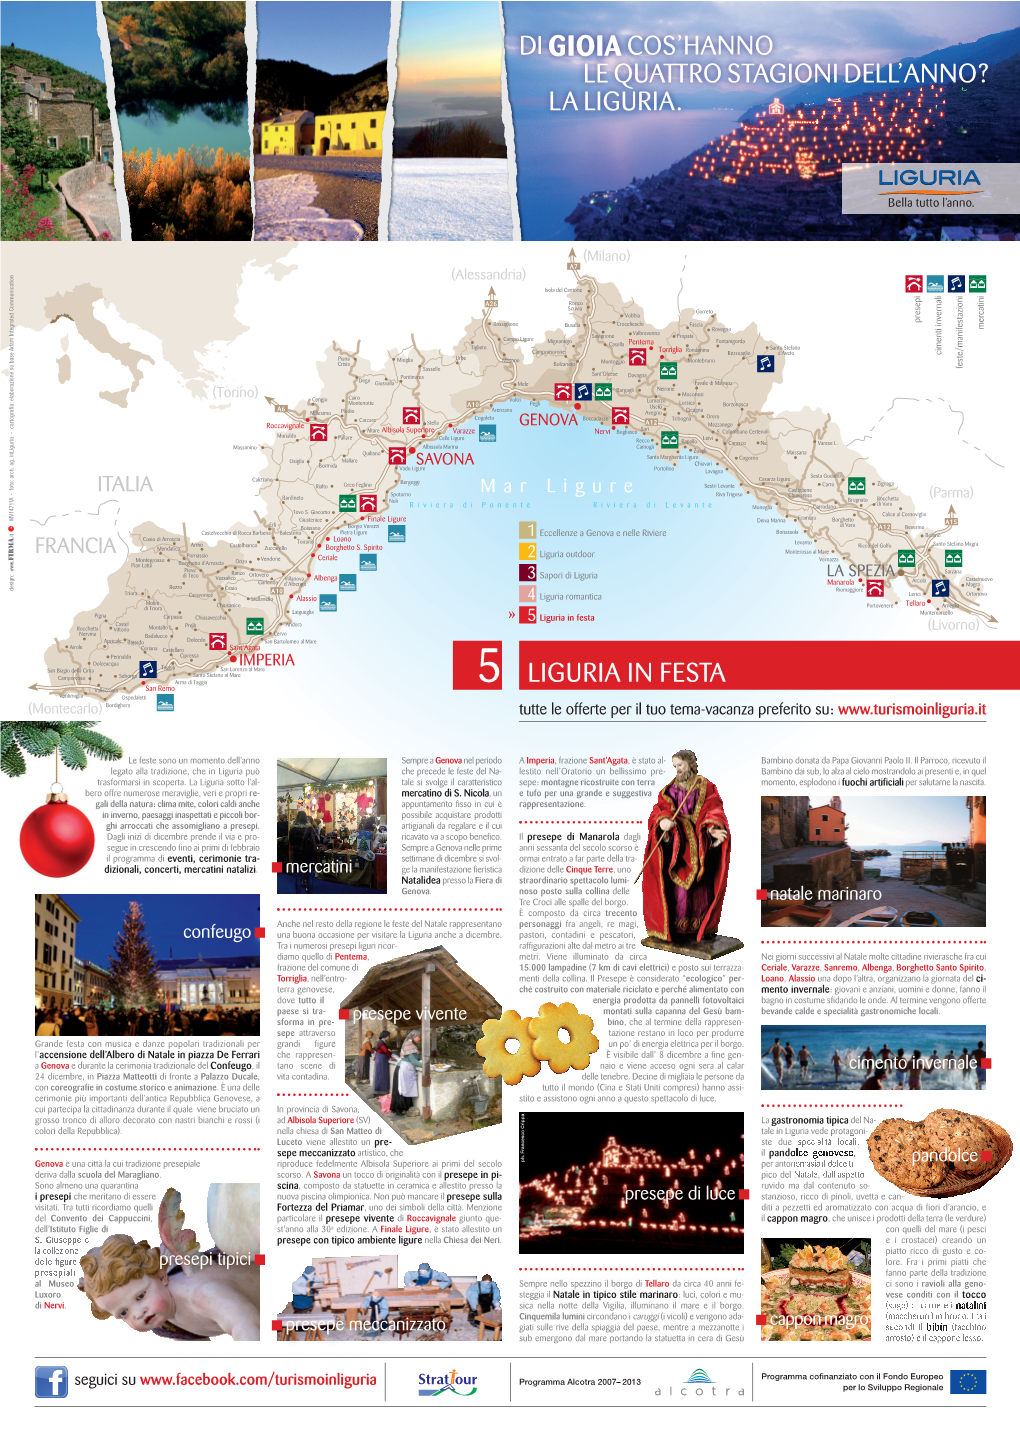 Liguria in Festa Di Gioiacos'hanno Le Quattro Stagioni Dell'anno?